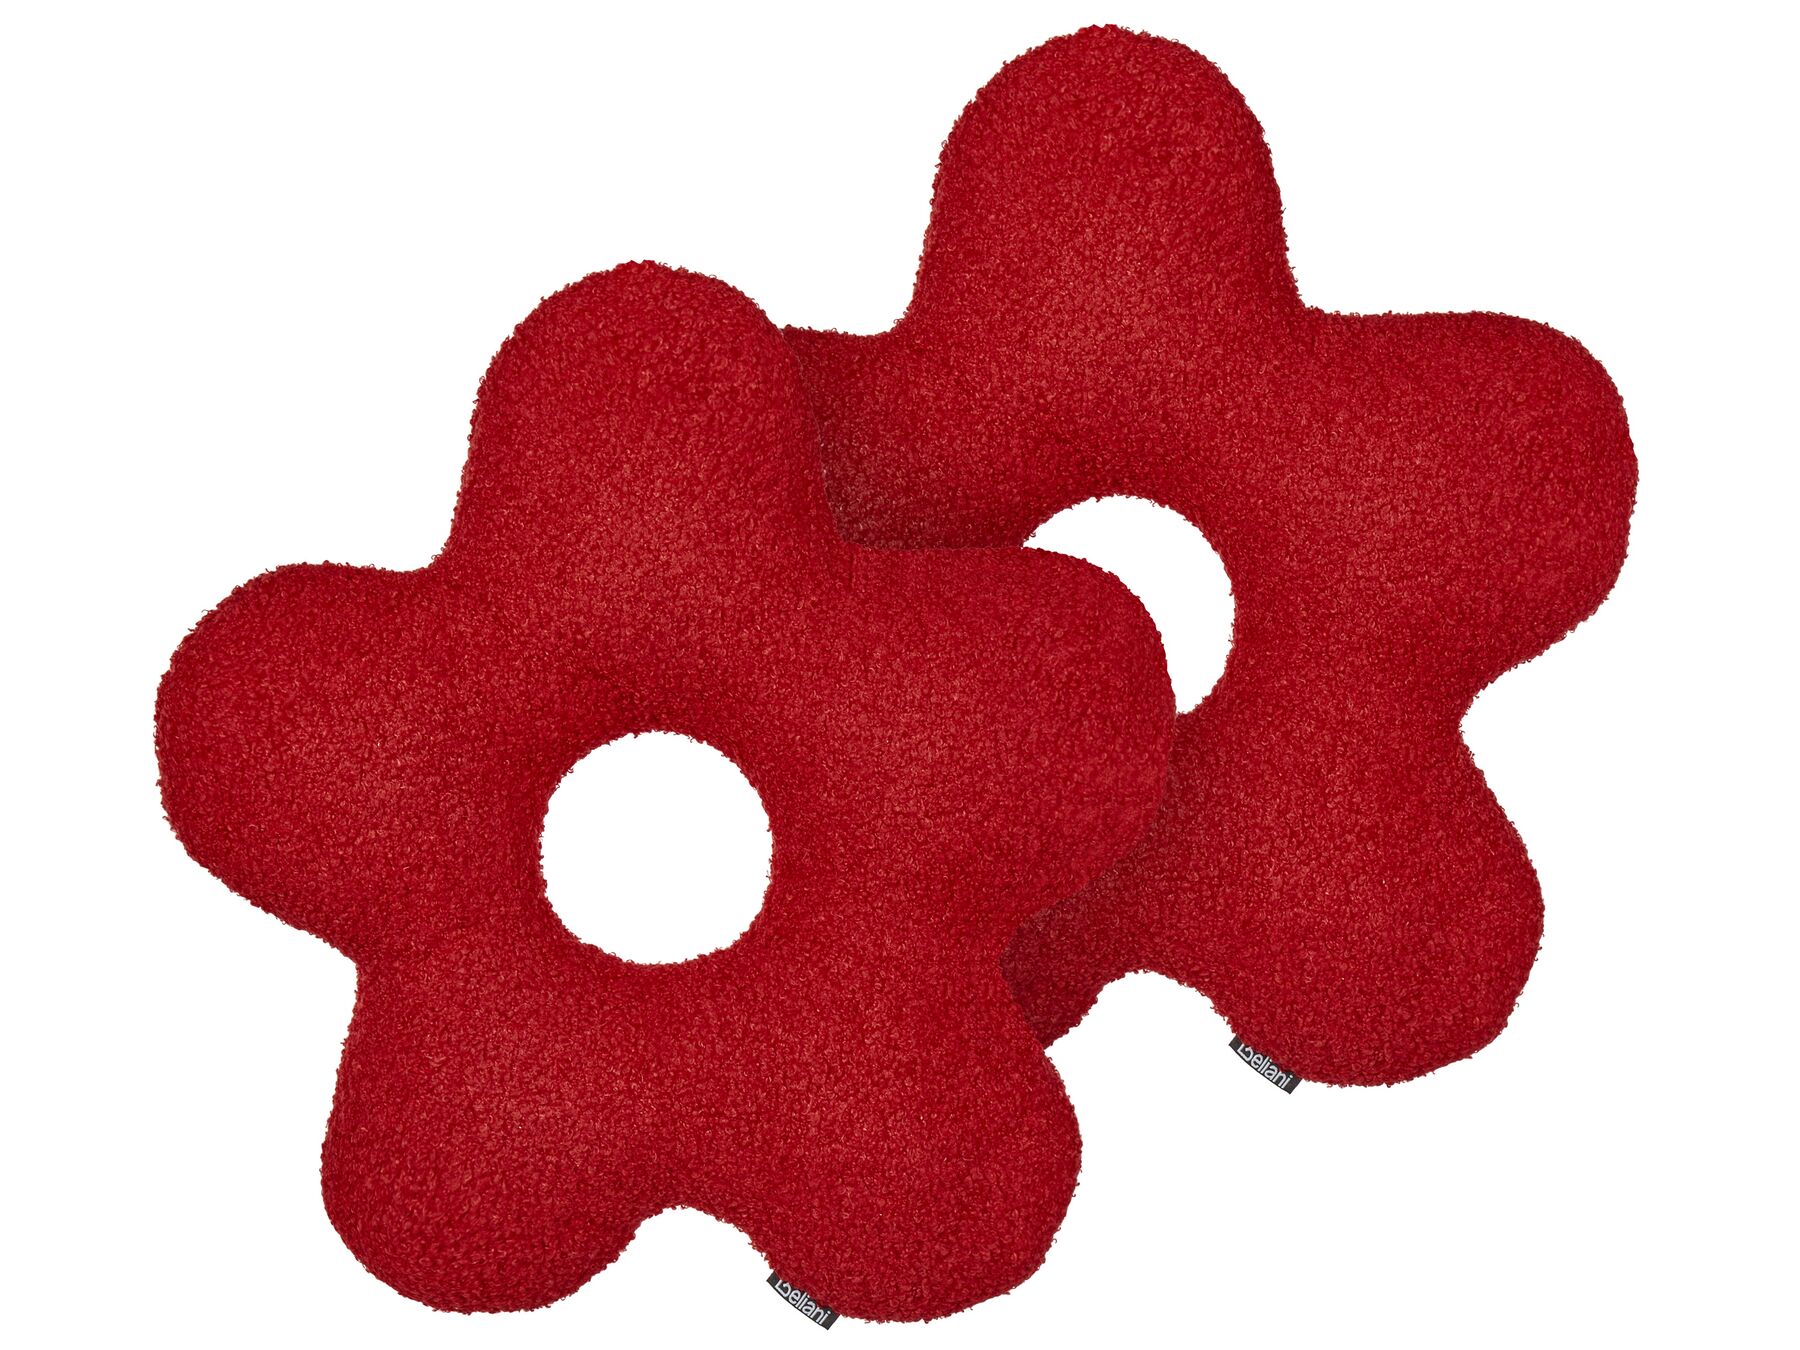 2 poduszki dekoracyjne teddy 40 x 40 cm czerwone CAMPONULA_889260